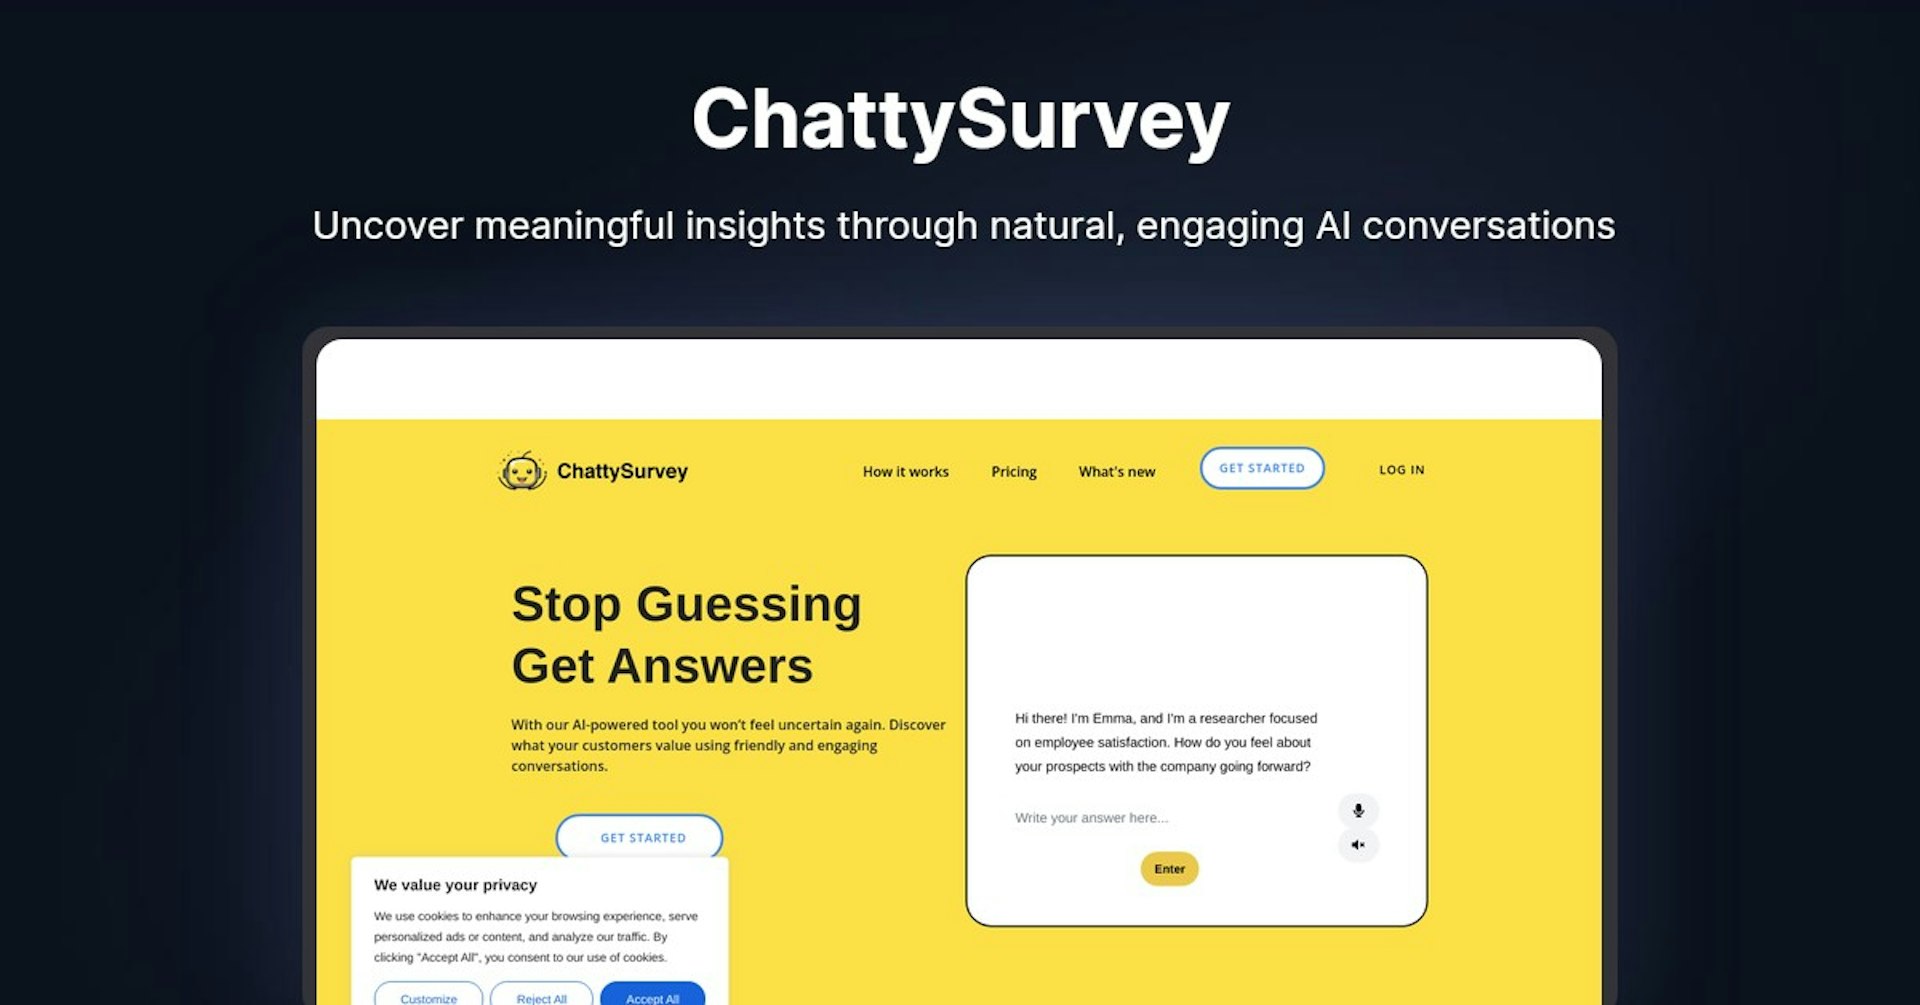 ChattySurvey